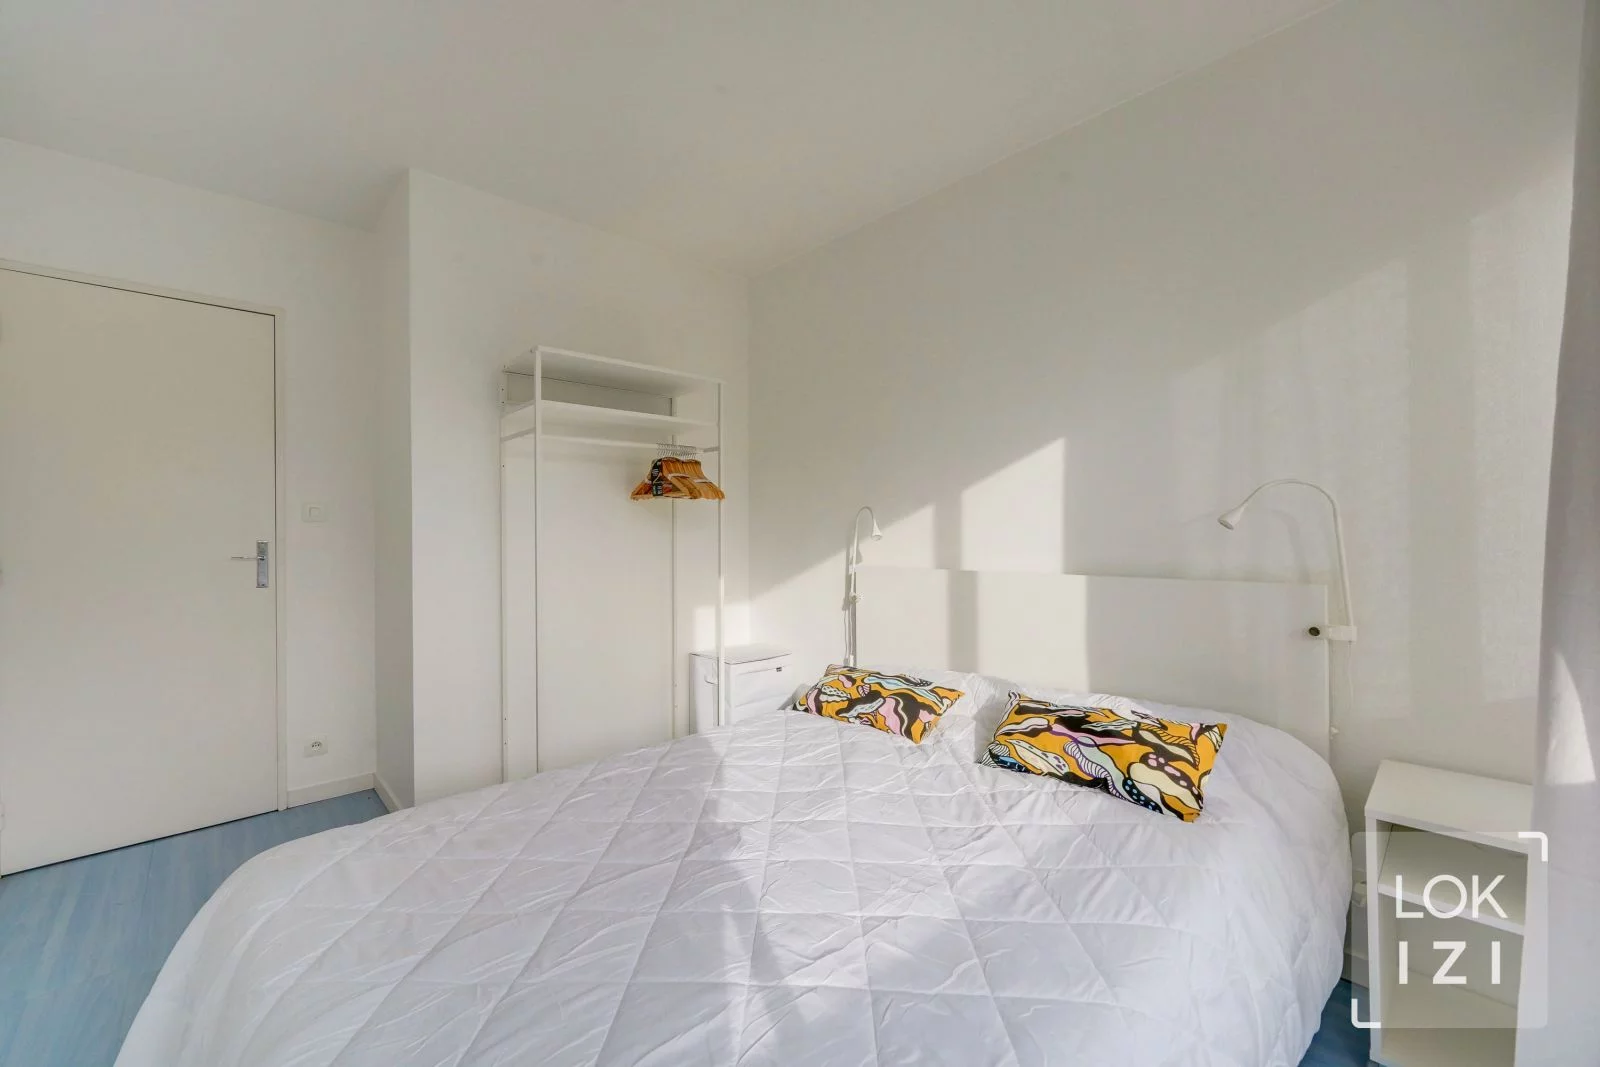 Location appartement meublé 2 pièces 44m²  (Bordeaux - Grand Parc)